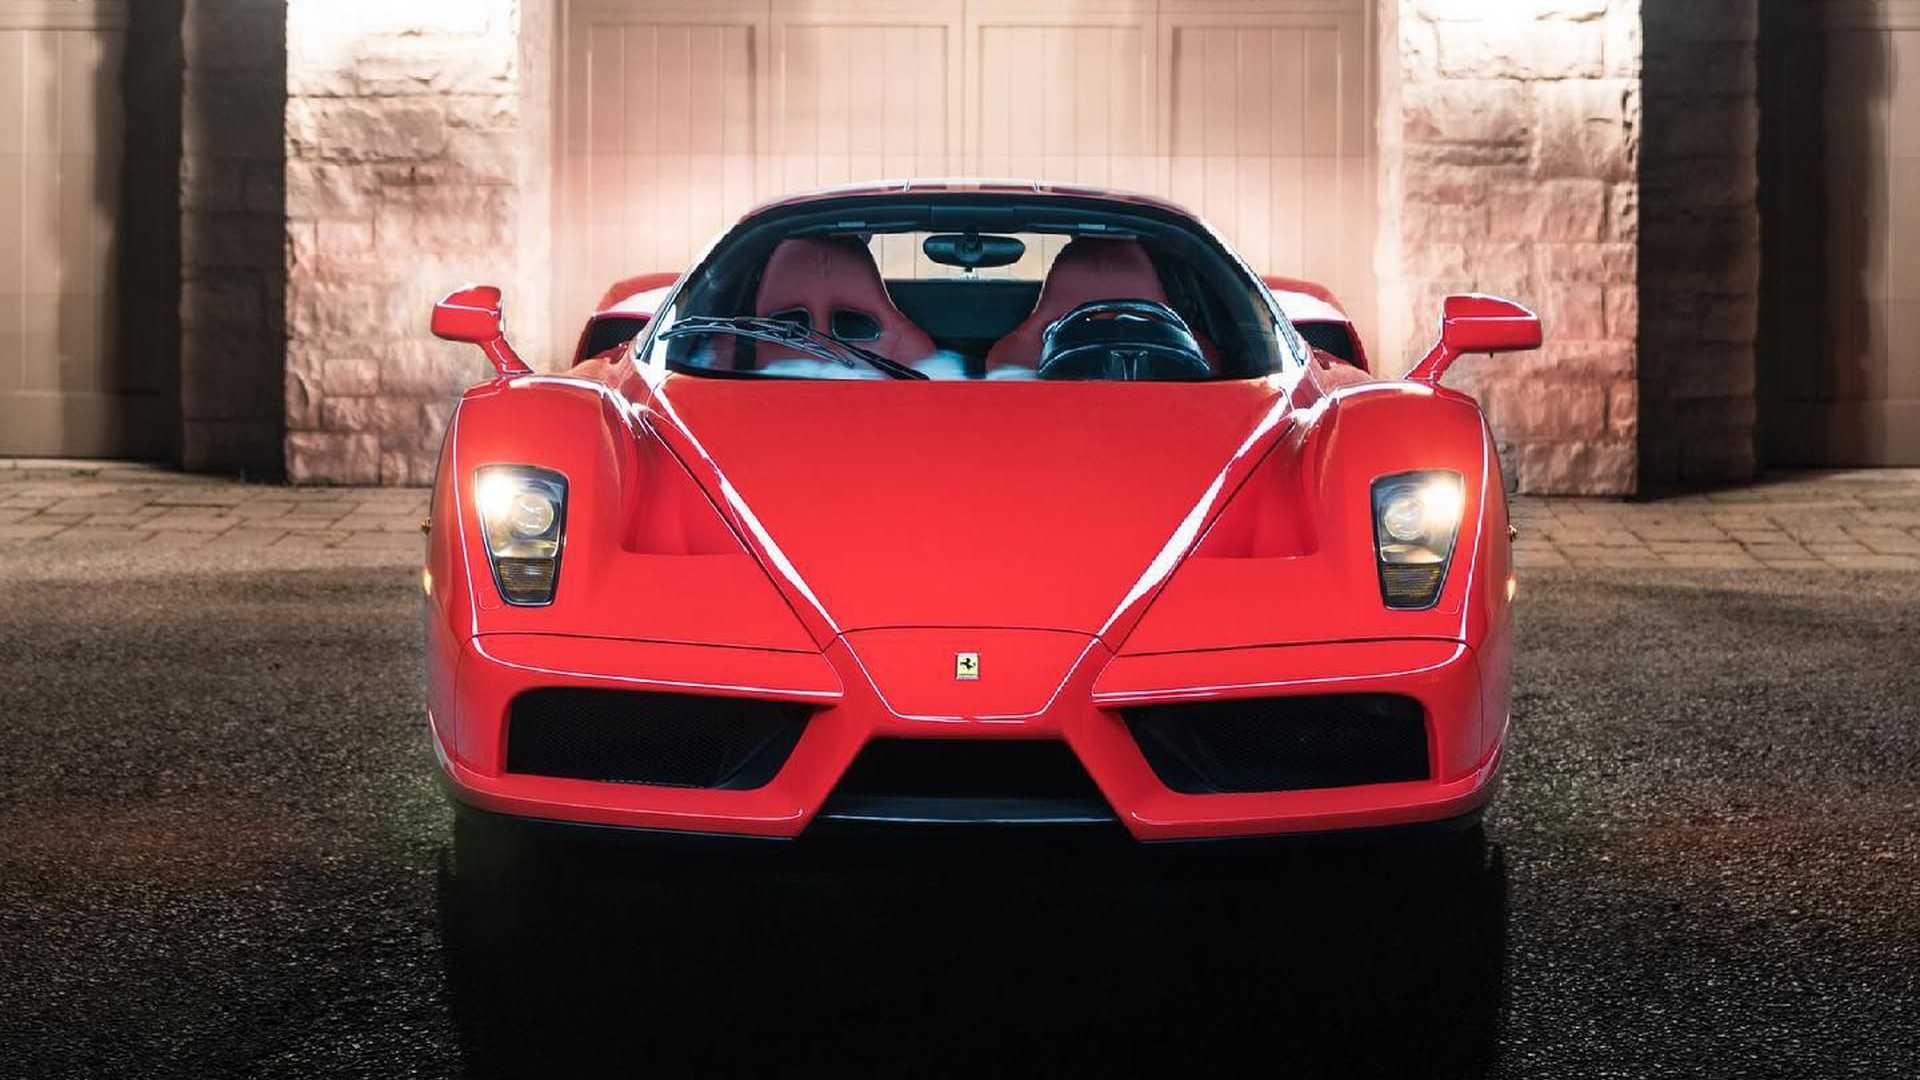 在最近的一次私人拍卖中,这辆火红色法拉利enzo以380万美元的价格成交